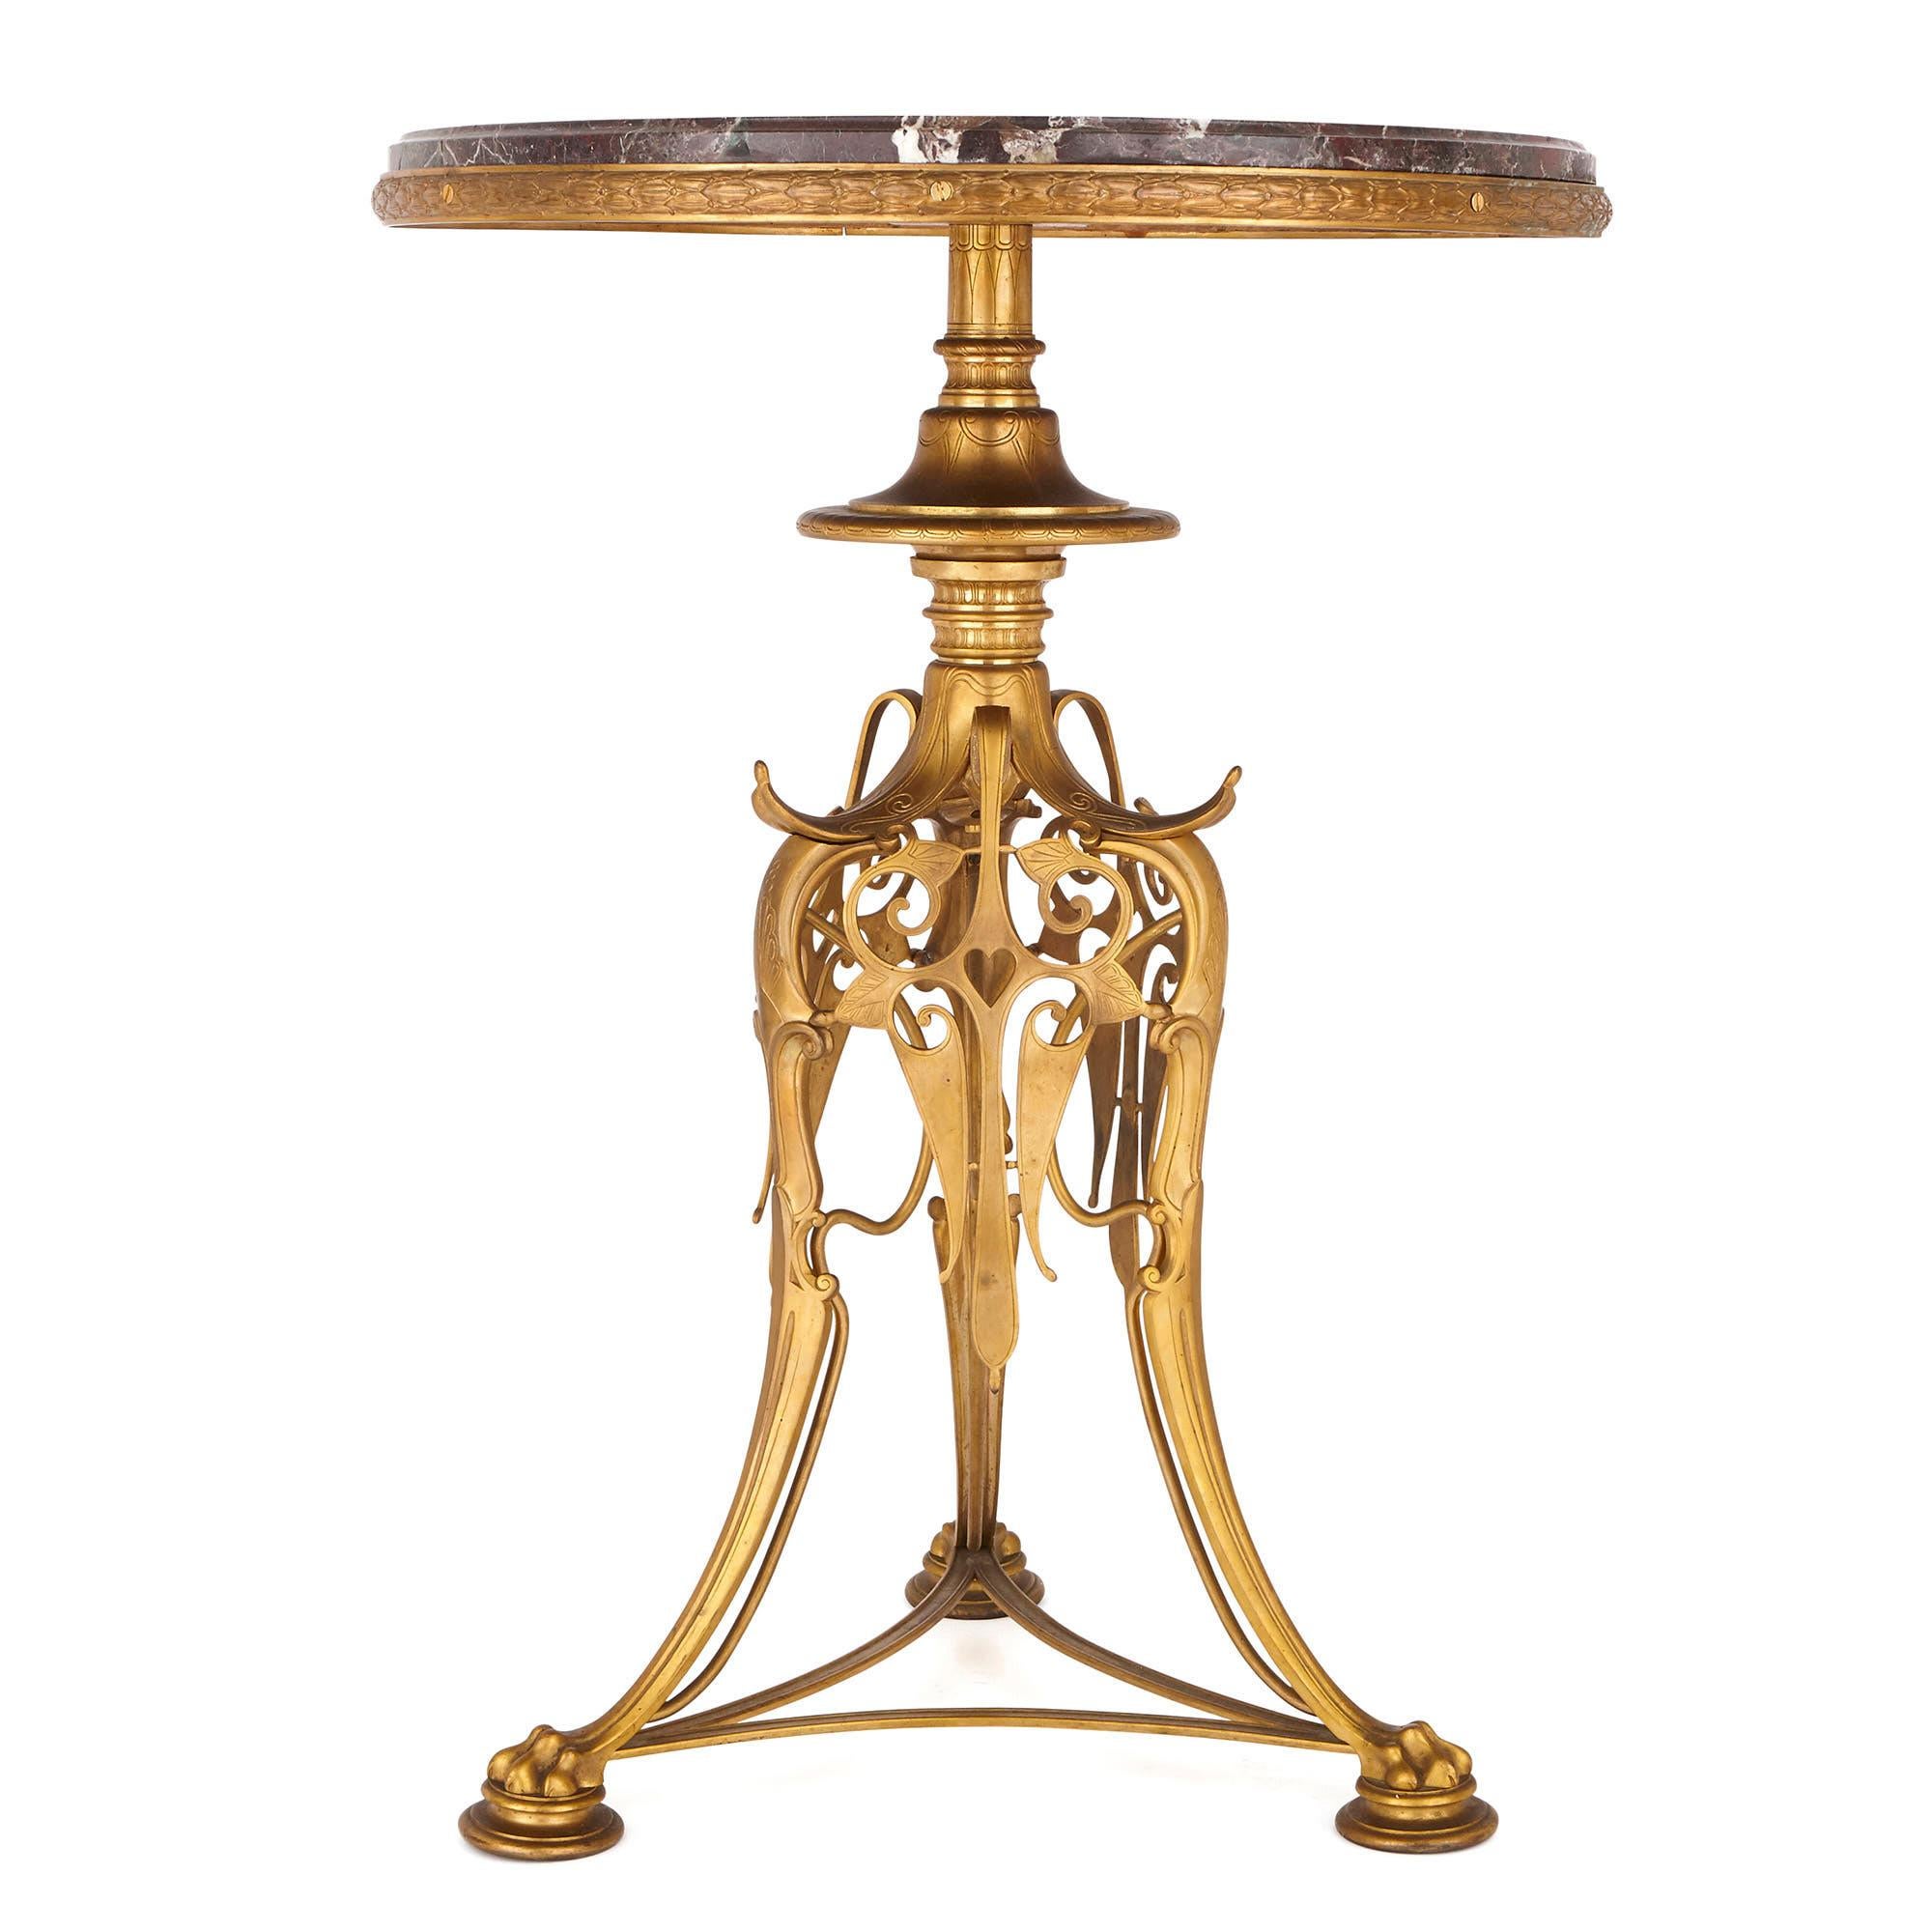 Diese schönen und ungewöhnlichen runden Tische (oder Guéridons) wurden von der führenden Bronze-Manufaktur der französischen Belle Époque, der Gießerei Barbedienne, hergestellt. Das 1838 gegründete Unternehmen spezialisierte sich auf die Herstellung